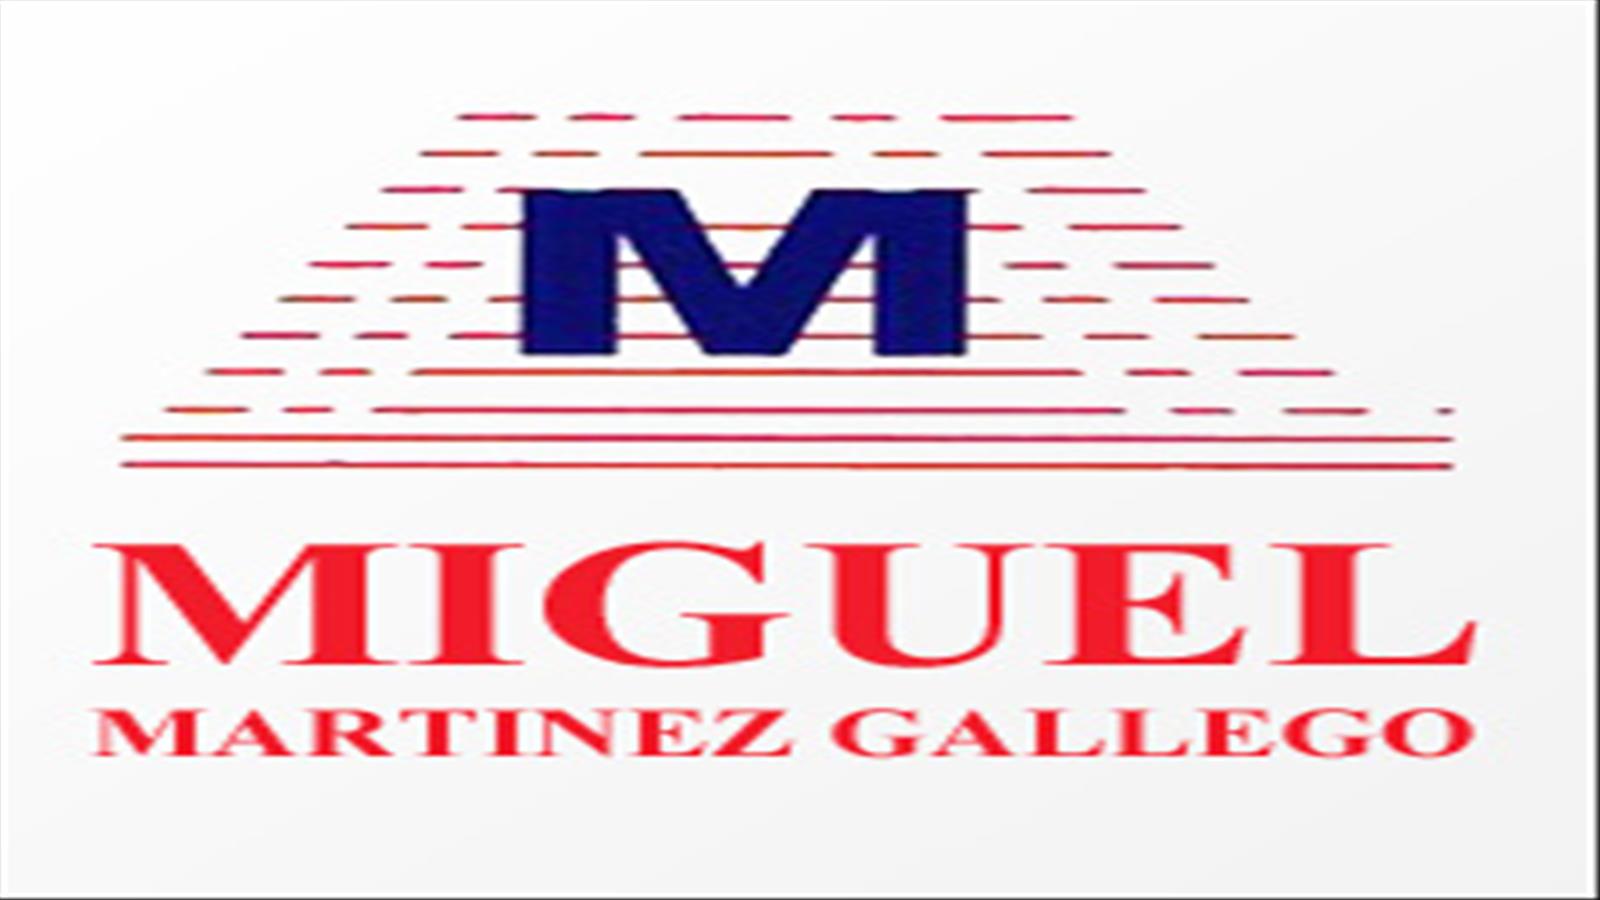 MIGUEL MARTÍNEZ GALLEGO